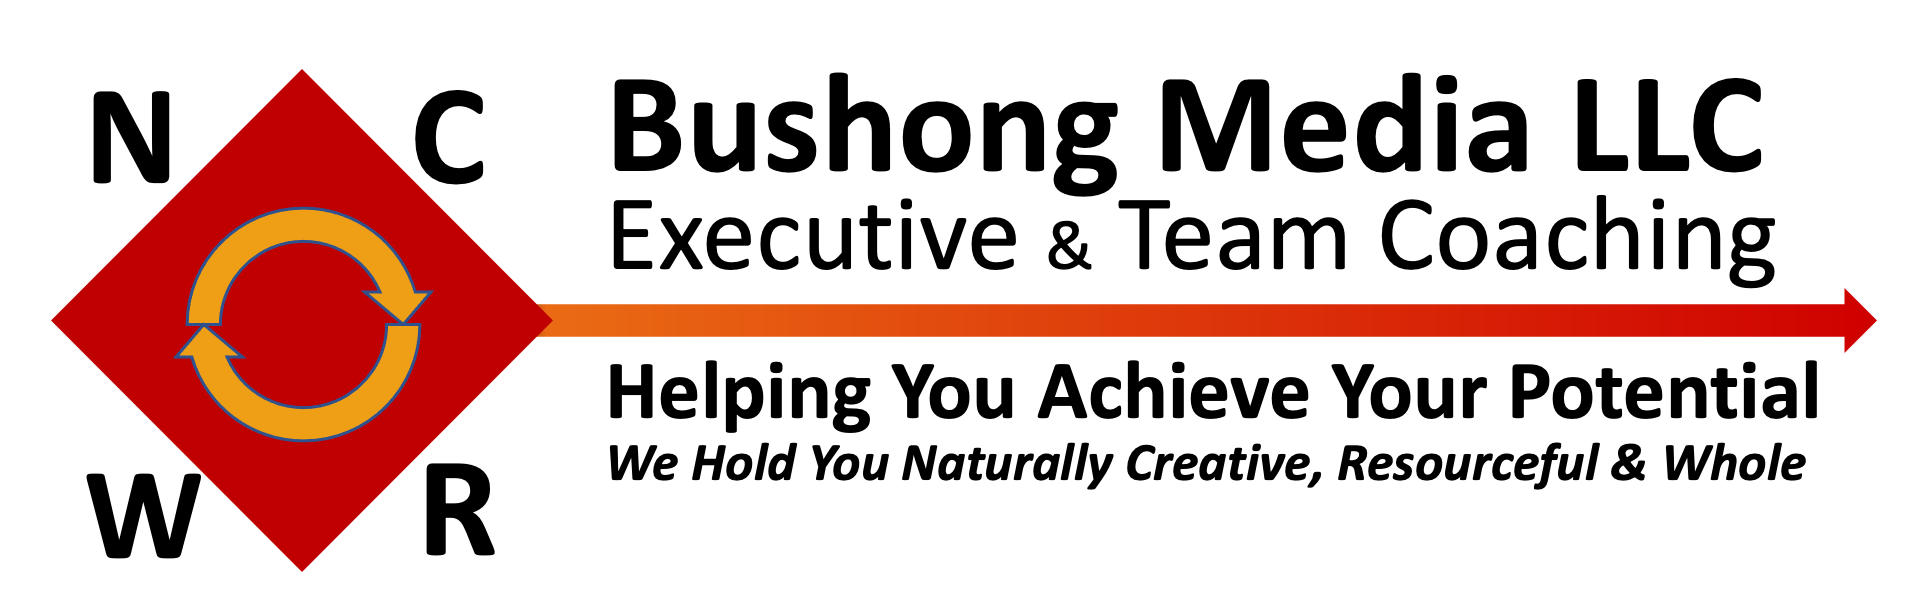 NCRW Coaching | Bushong Media LLC